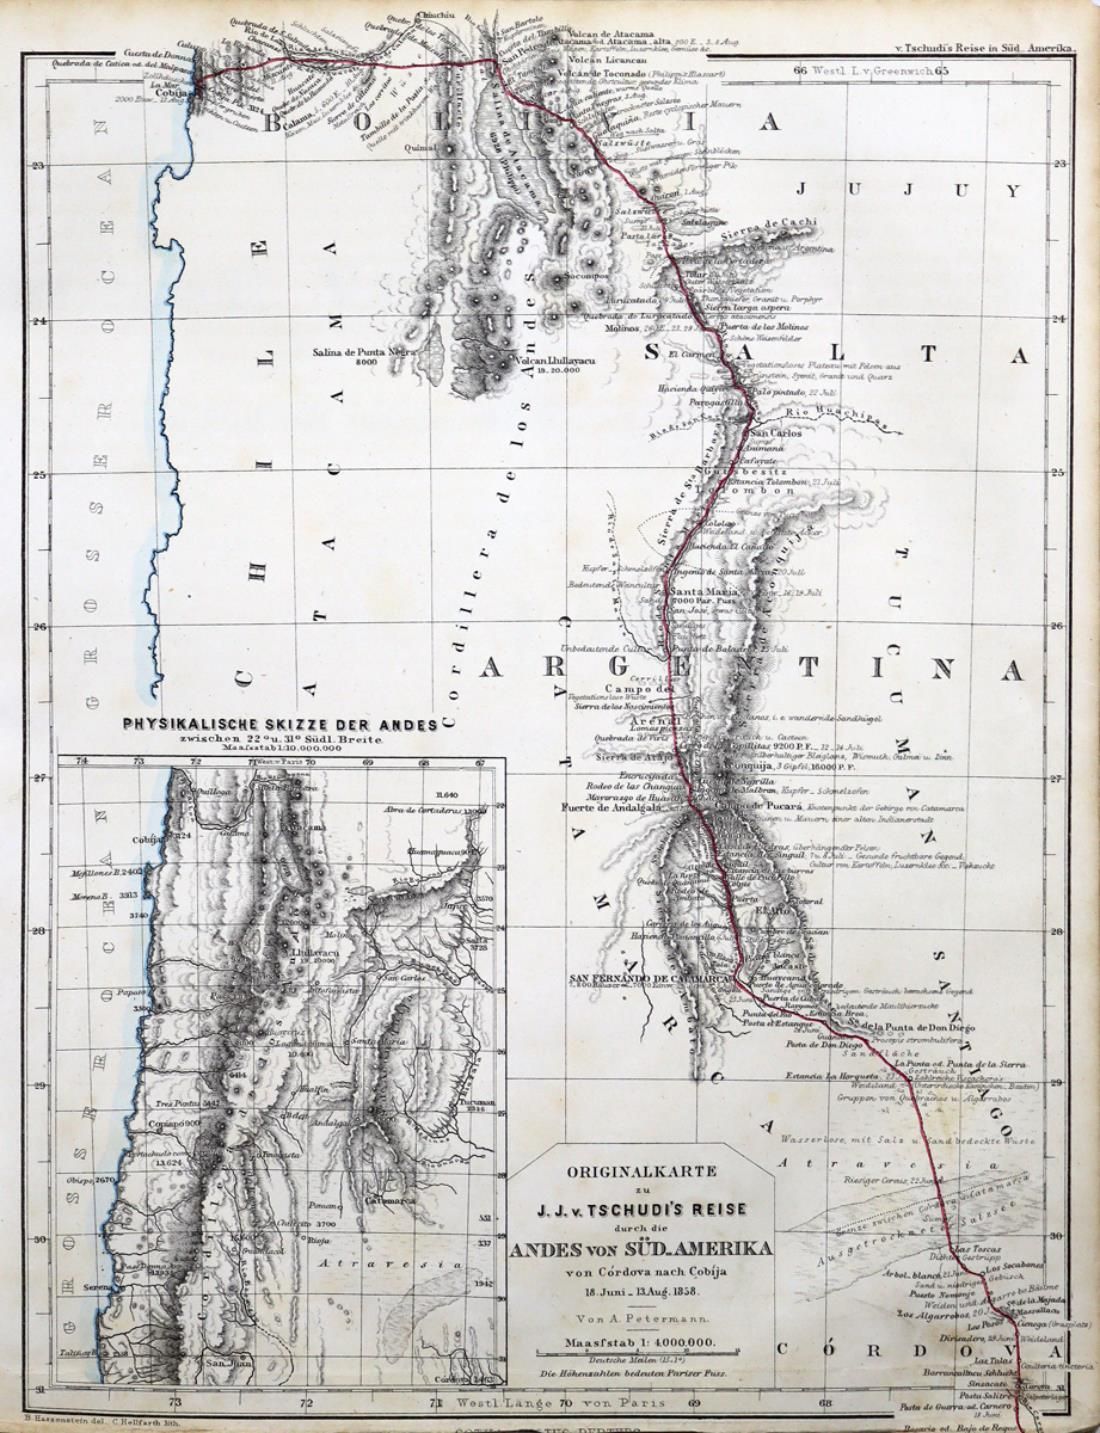 Tschudi,J.J.V. Reise durch die Andes von Süd-Amerika. Von Cordova nach Cobija im&hellip;